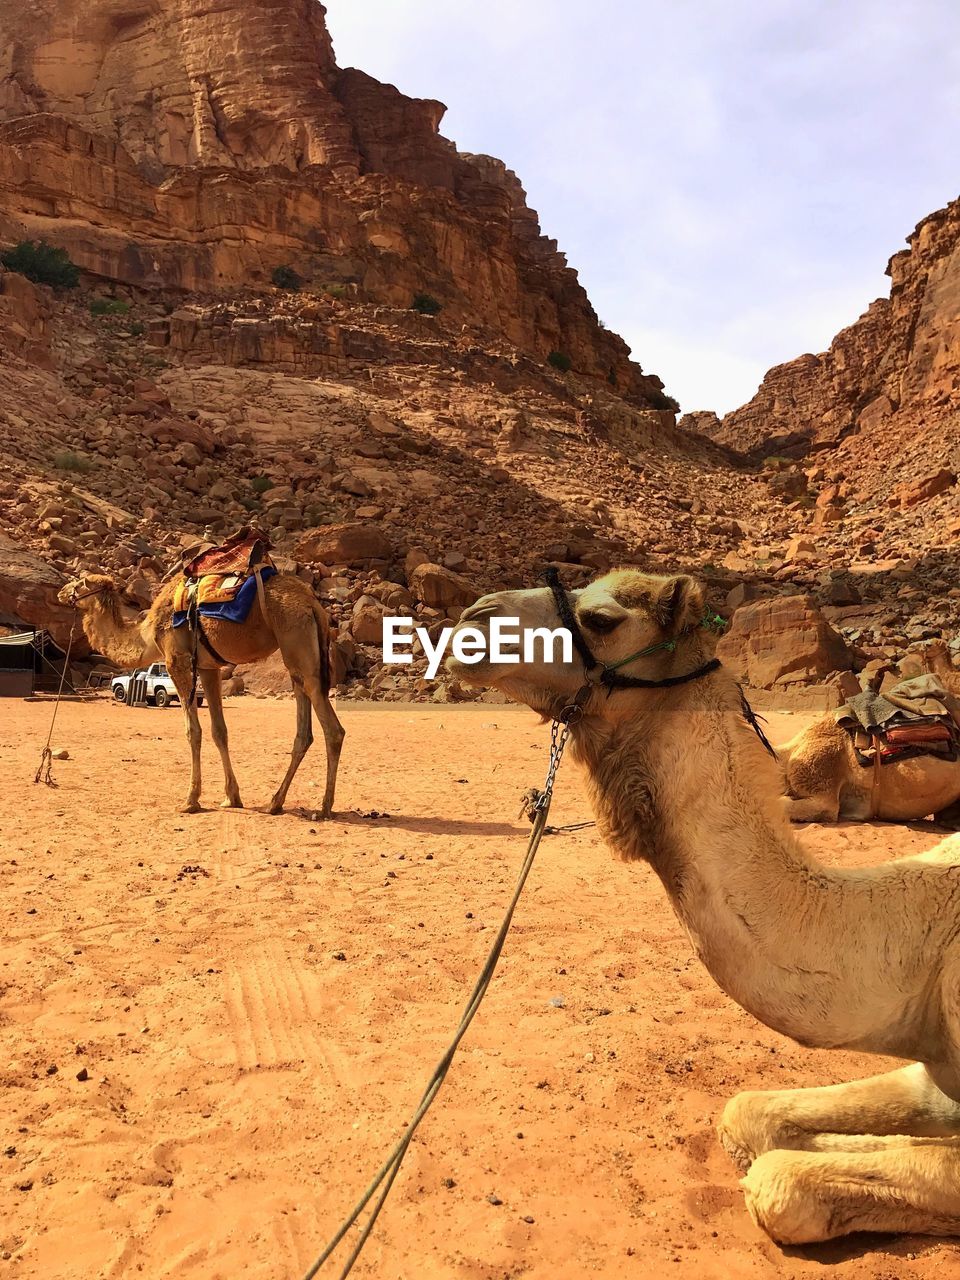 Camels in wadi rum desert in jordan